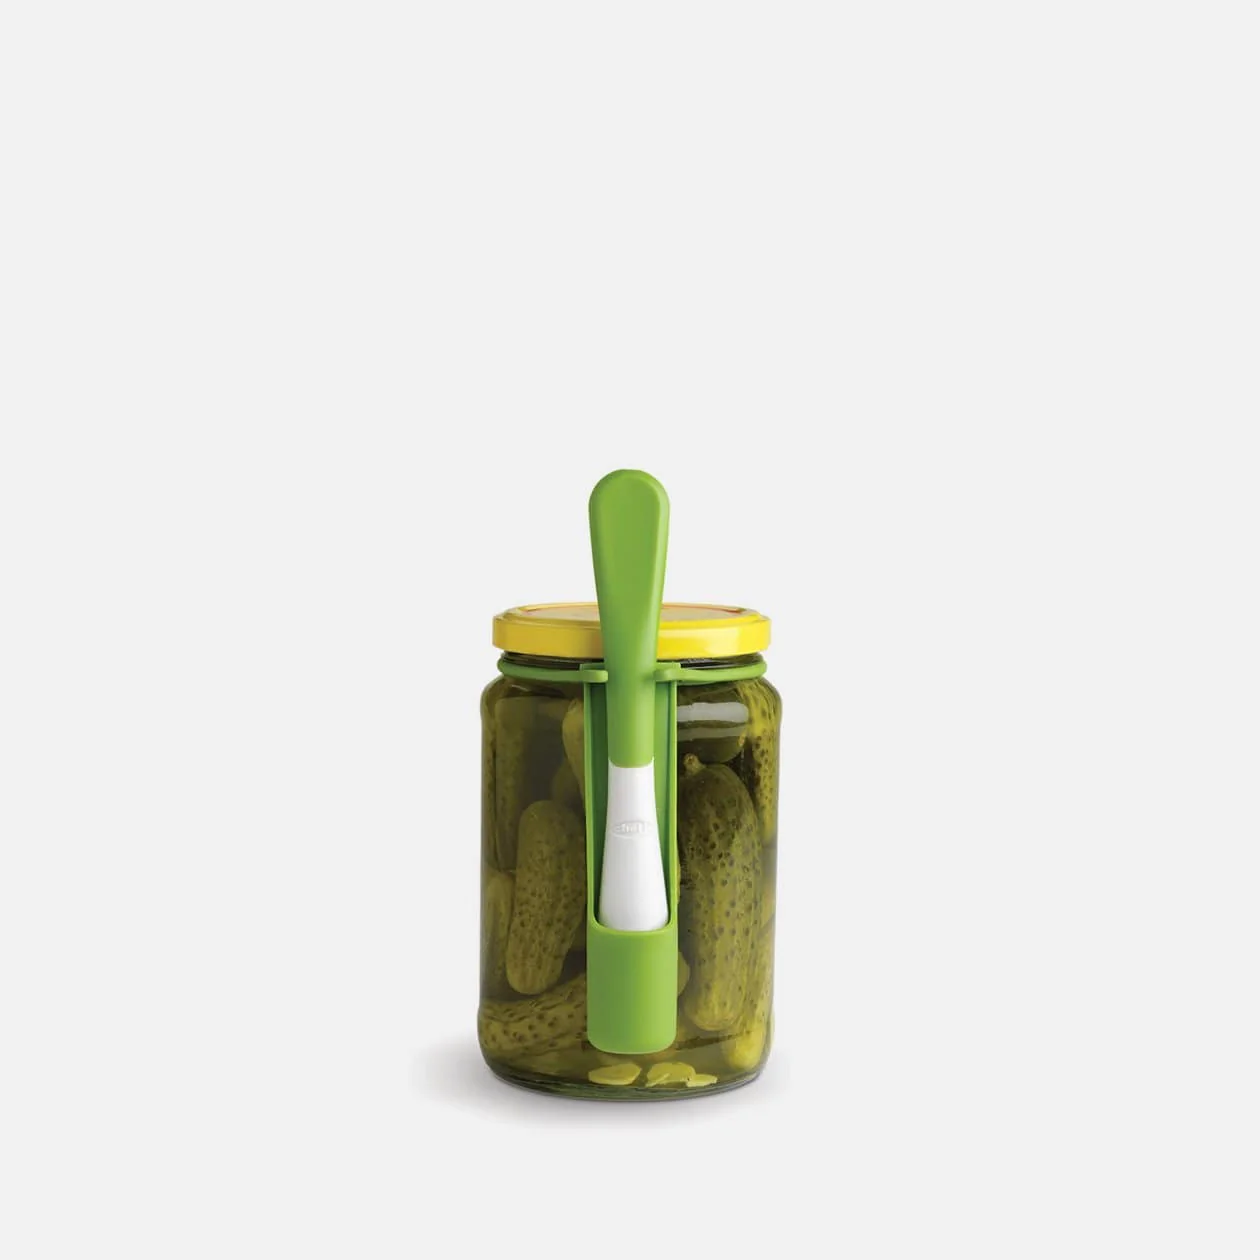 Chefn Fridge Fork on the side of a pickle jar